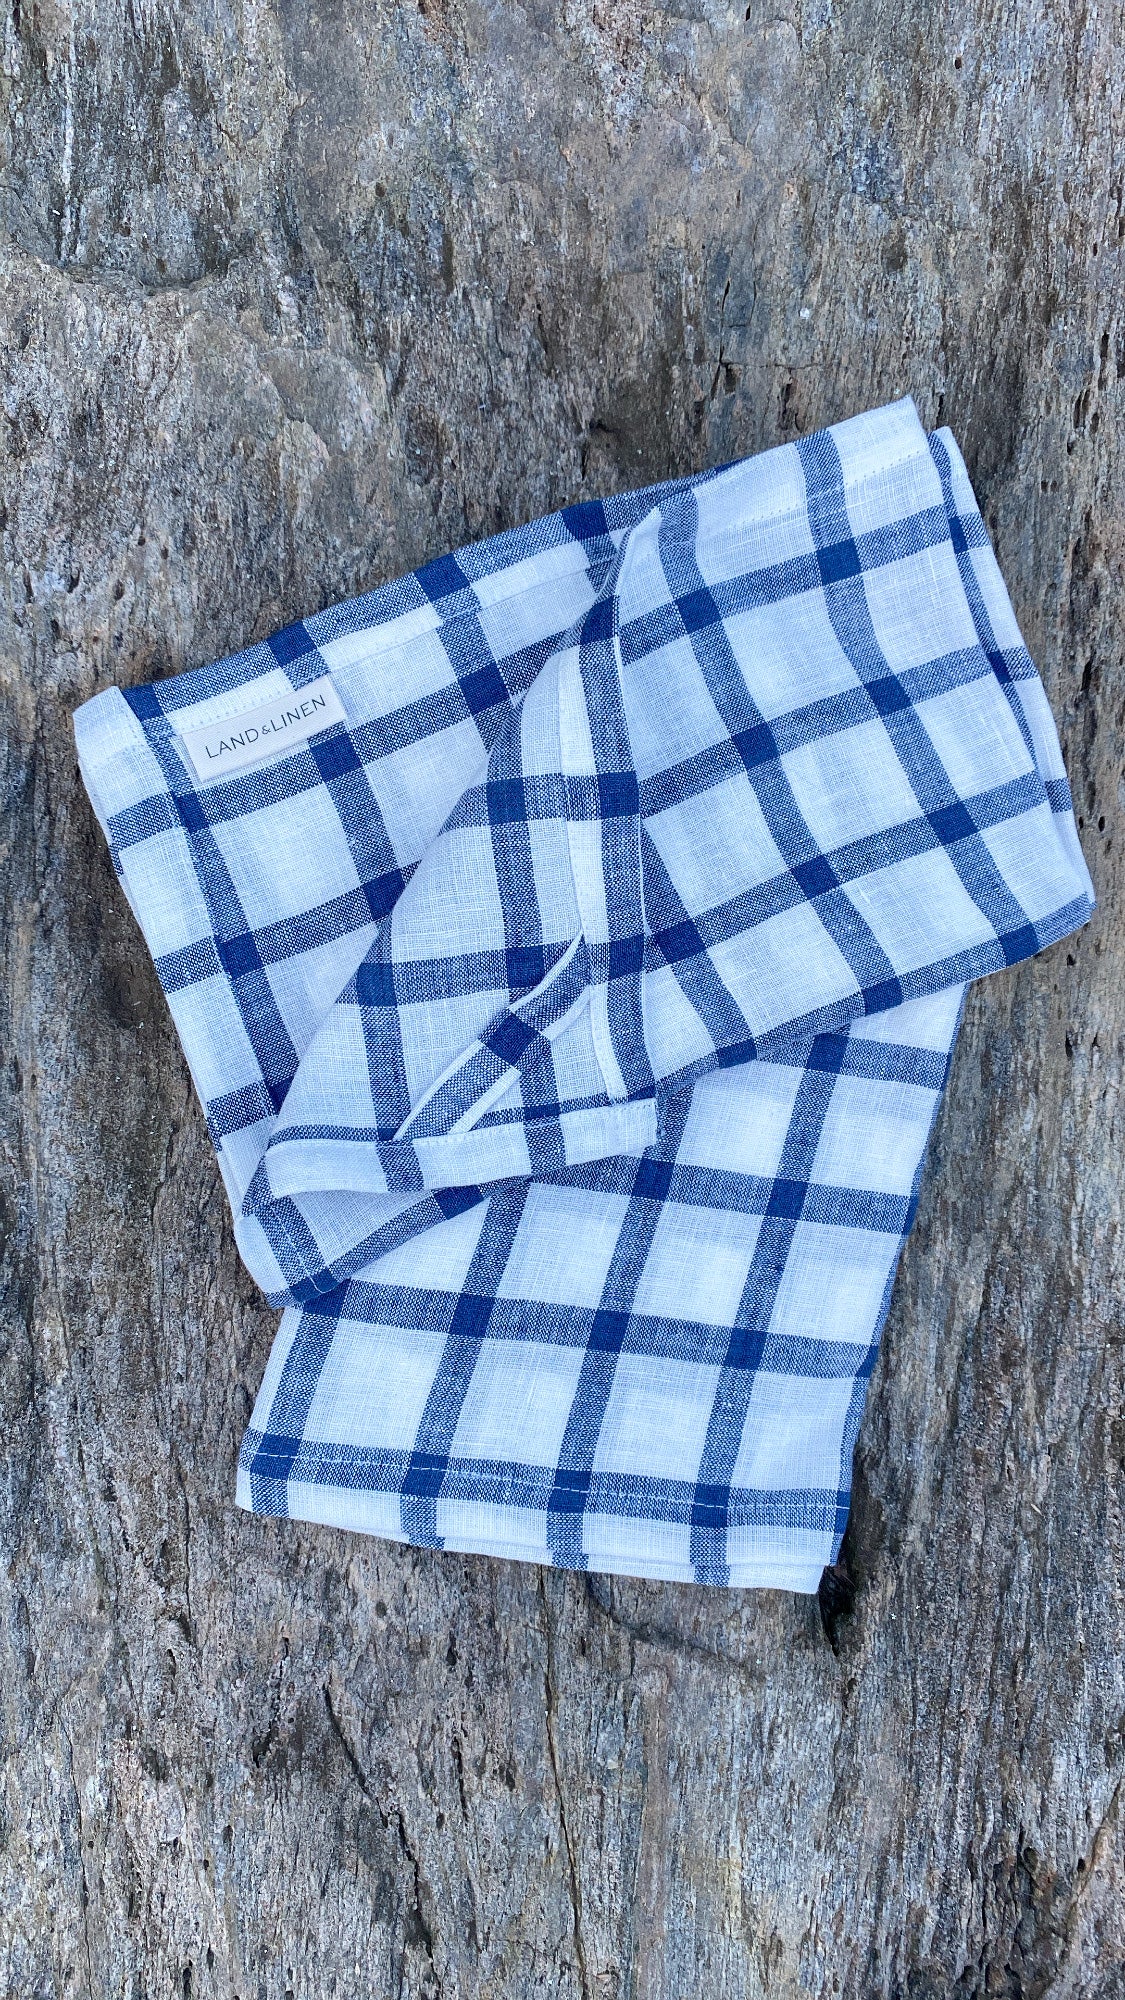 Handmade Linen Tea Towels